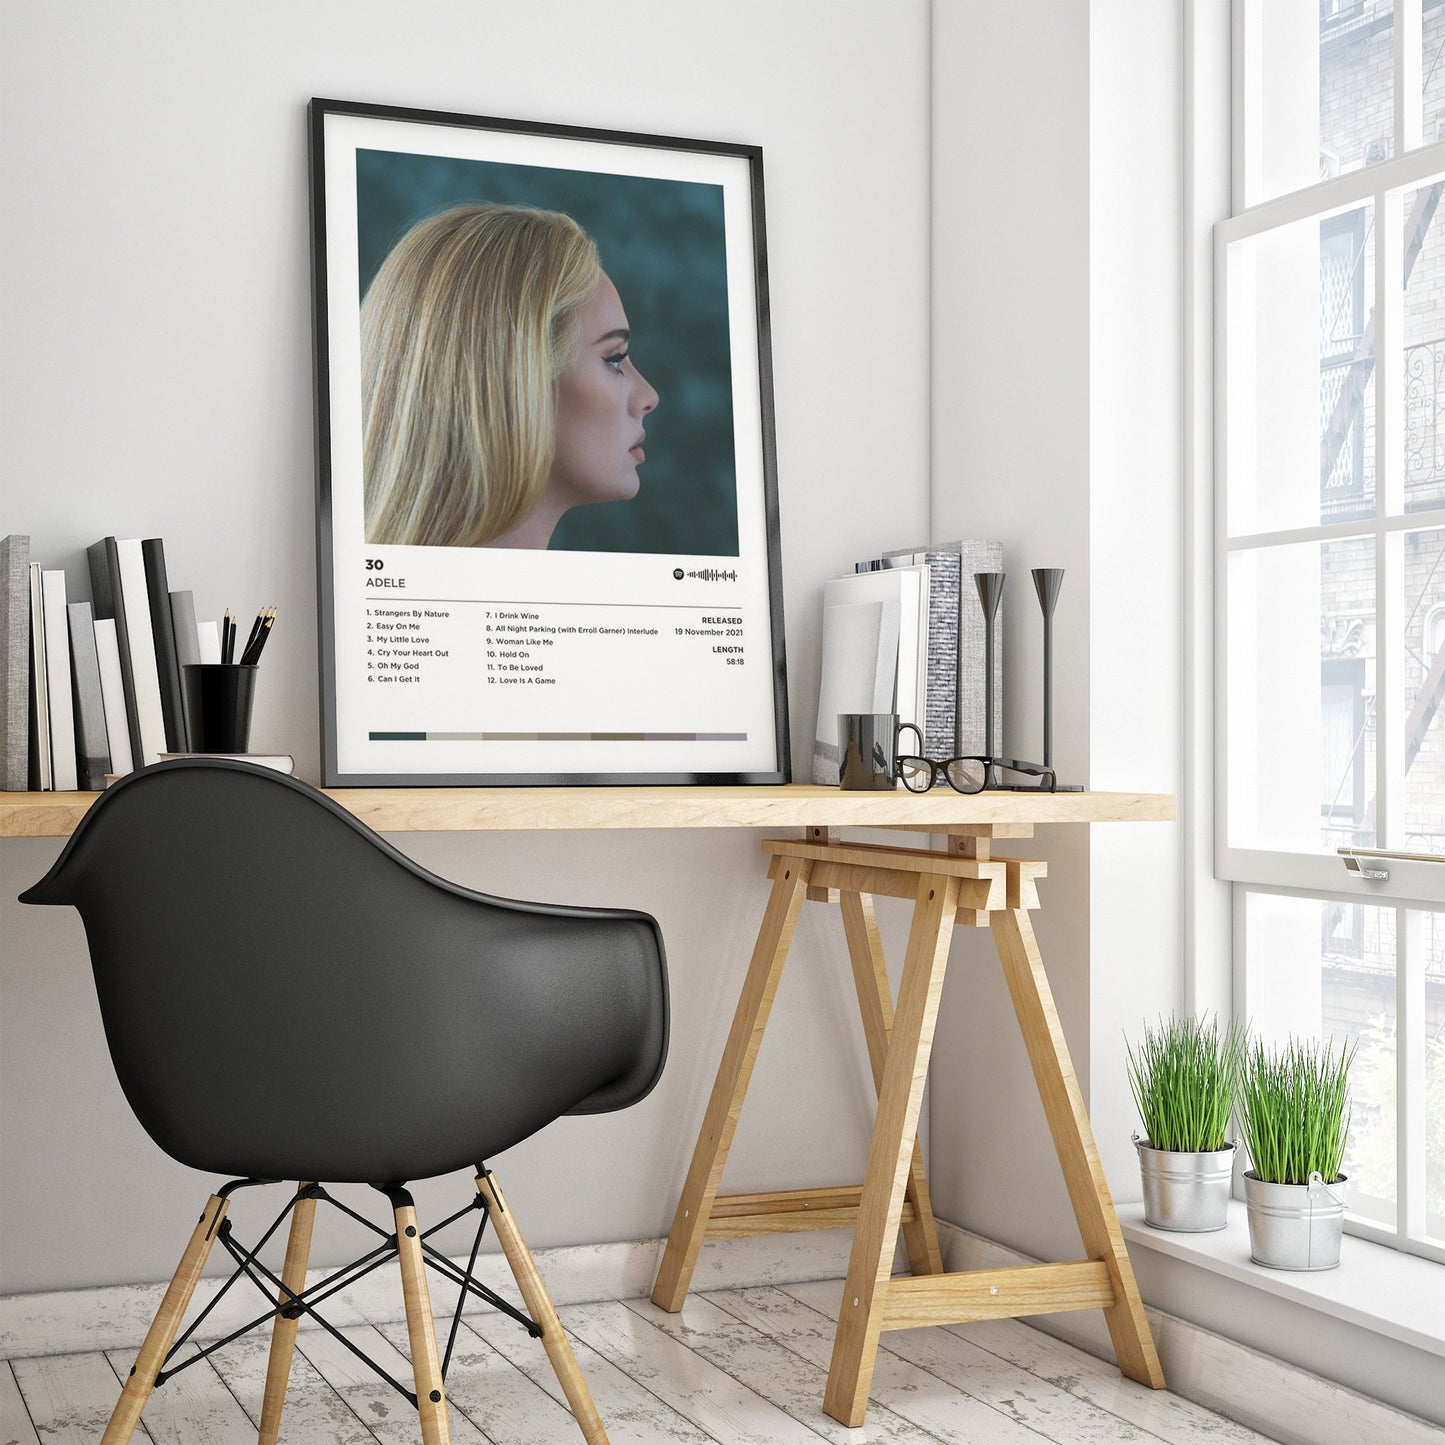 Adele - 30 Poster Print | Framed Options | Album Cover Artwork